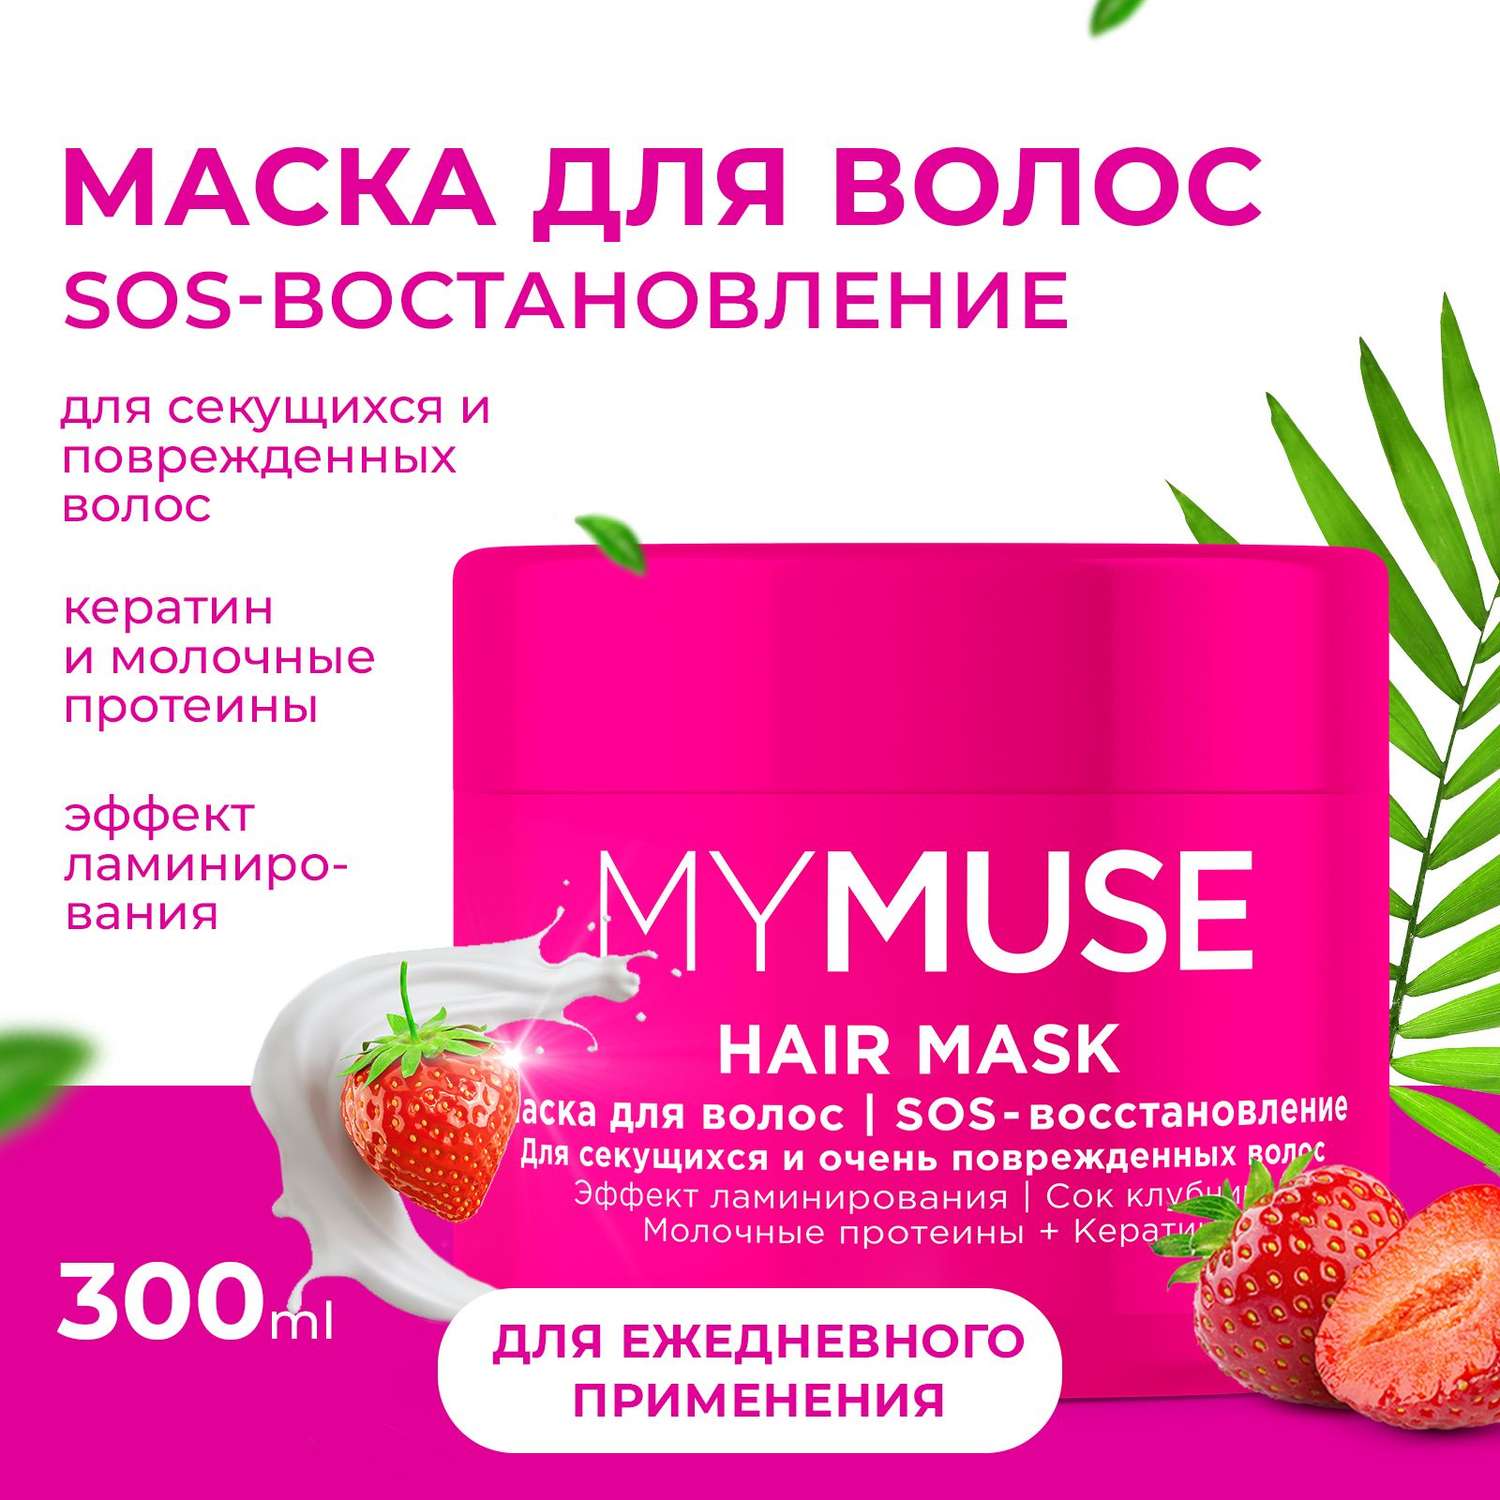 Маска для волос MYMUSE SOS-восстановление 300 мл - фото 2